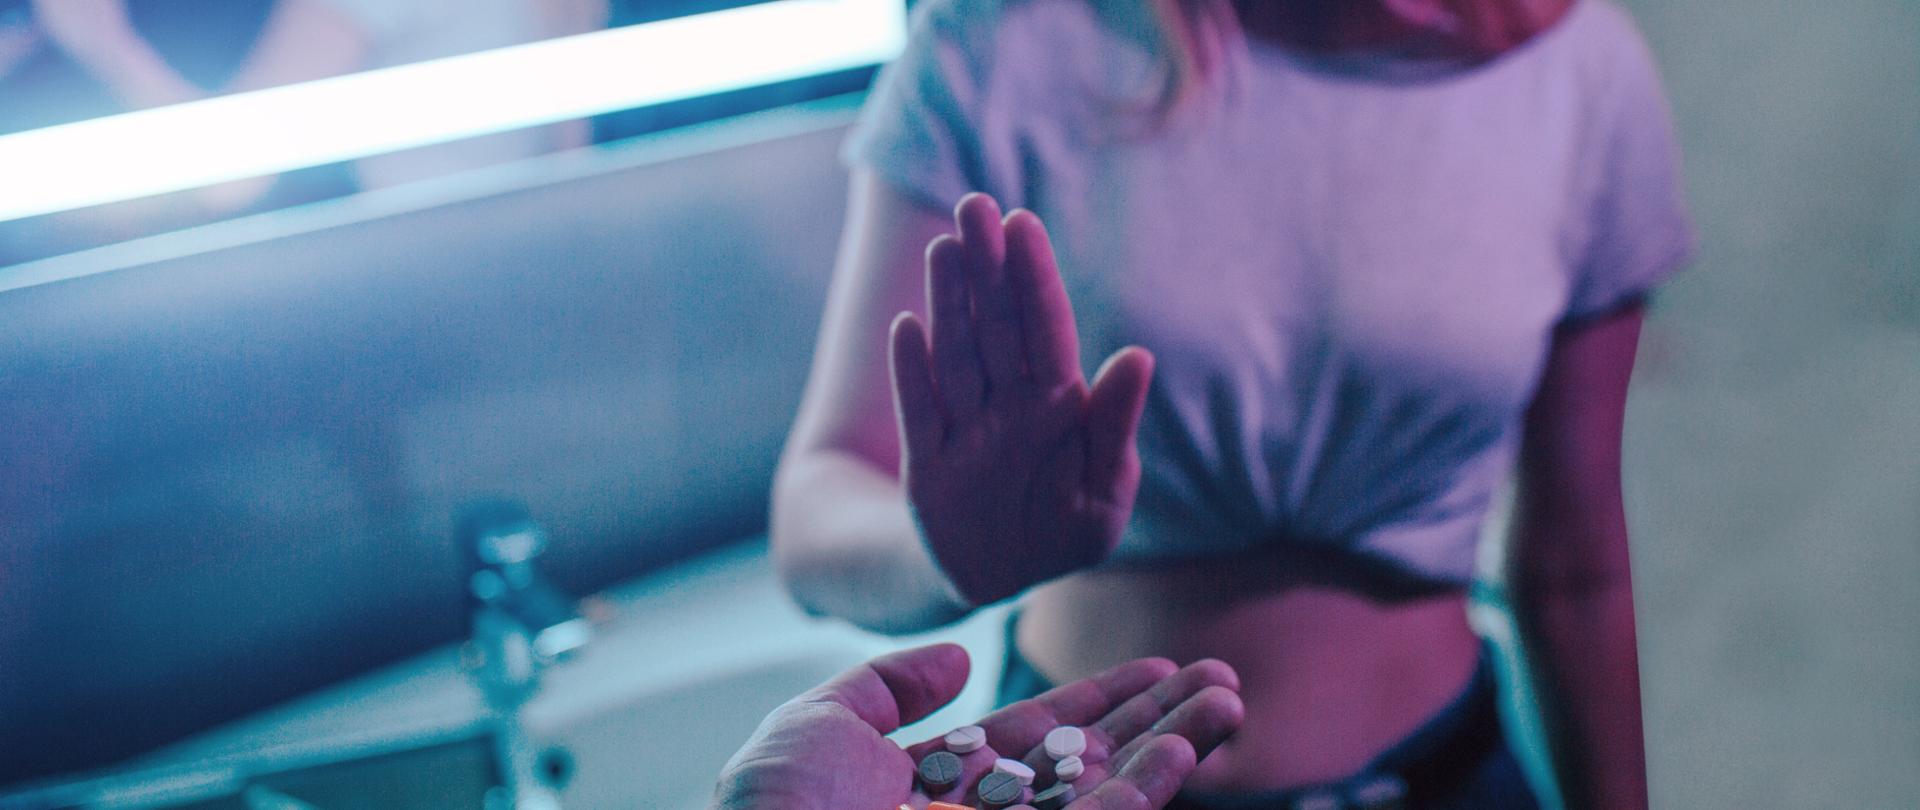 Żadnych narkotyków. Oferta leków. Odrzuć ofertę narkotyków. Ręka mówi NIE. Młoda kobieta pokazuje otwartą dłoń przeciwko ofercie narkotyków, trzymając w ręku kolorowe narkotyki w nocnym klubie. 